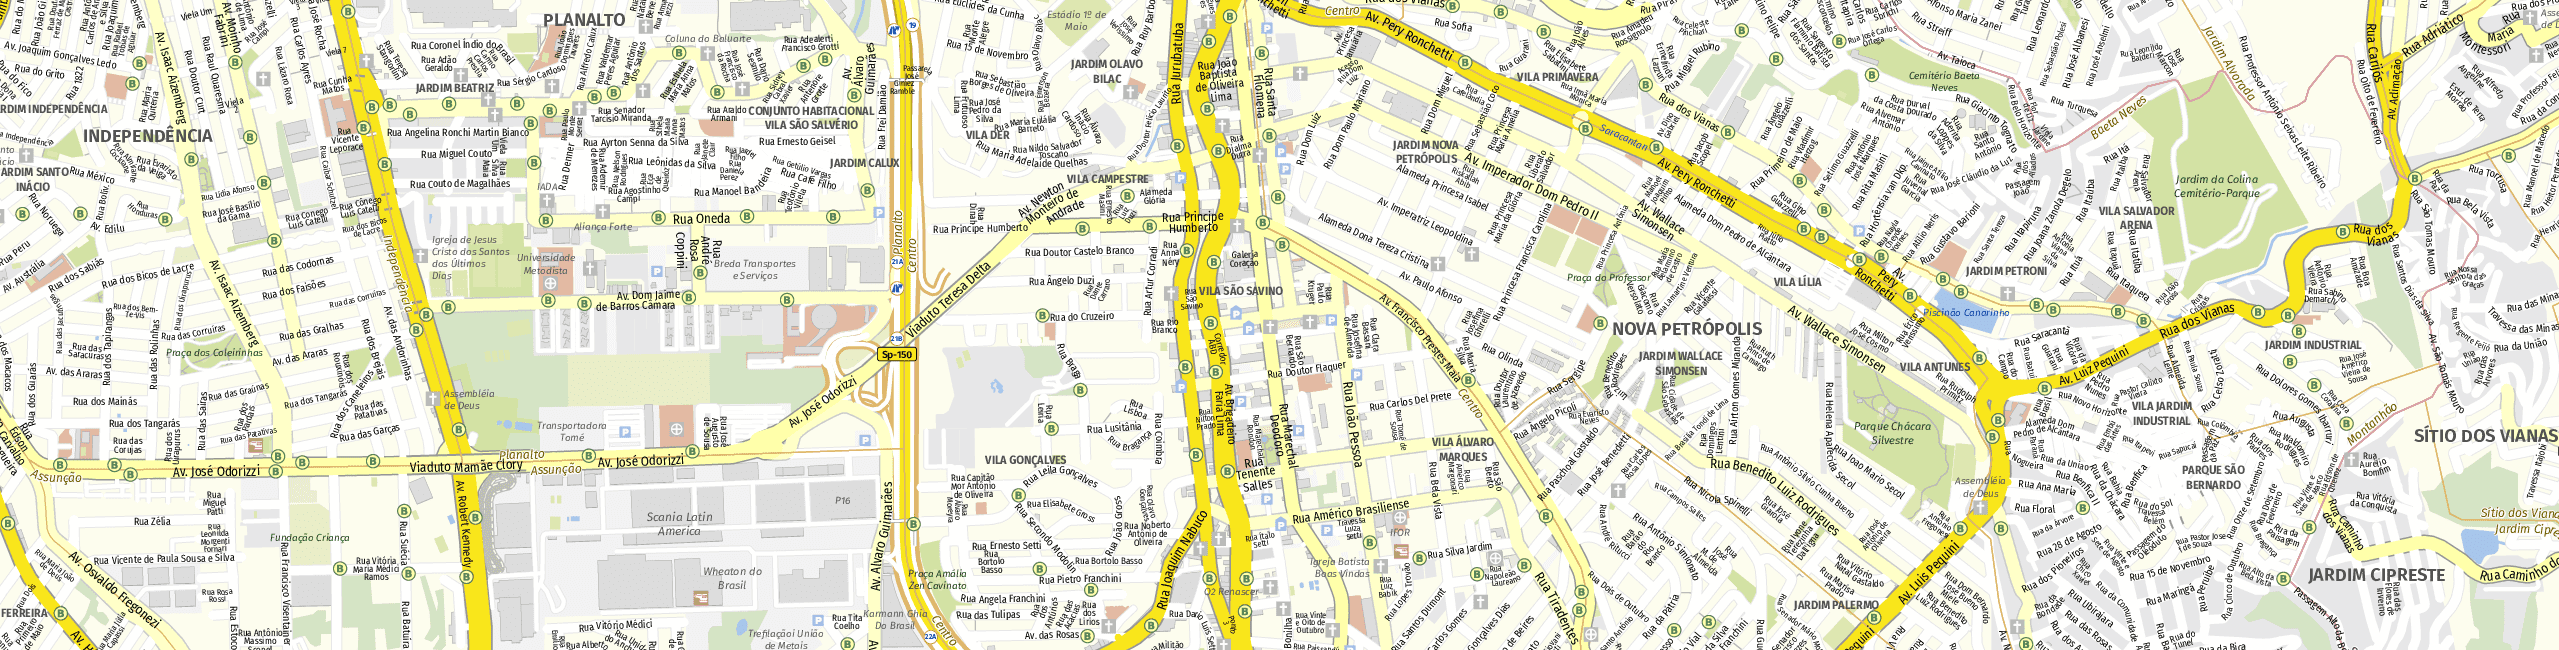 Stadtplan São Bernardo do Campo zum Downloaden.